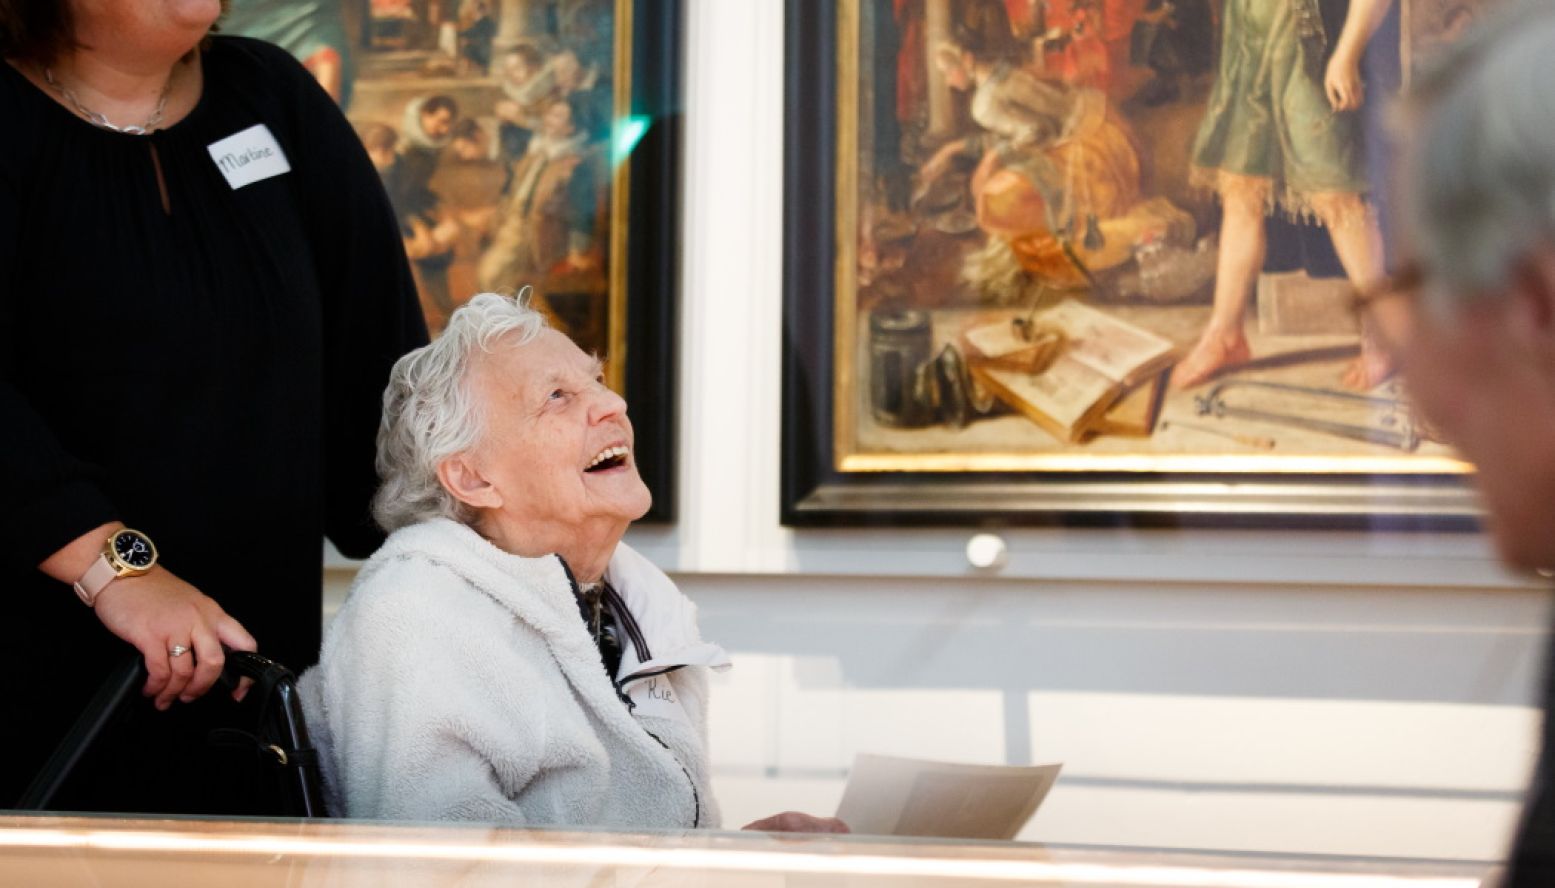 Een museumbezoek maakt mensen met dementie blijer. Foto: Museum Boerhaave